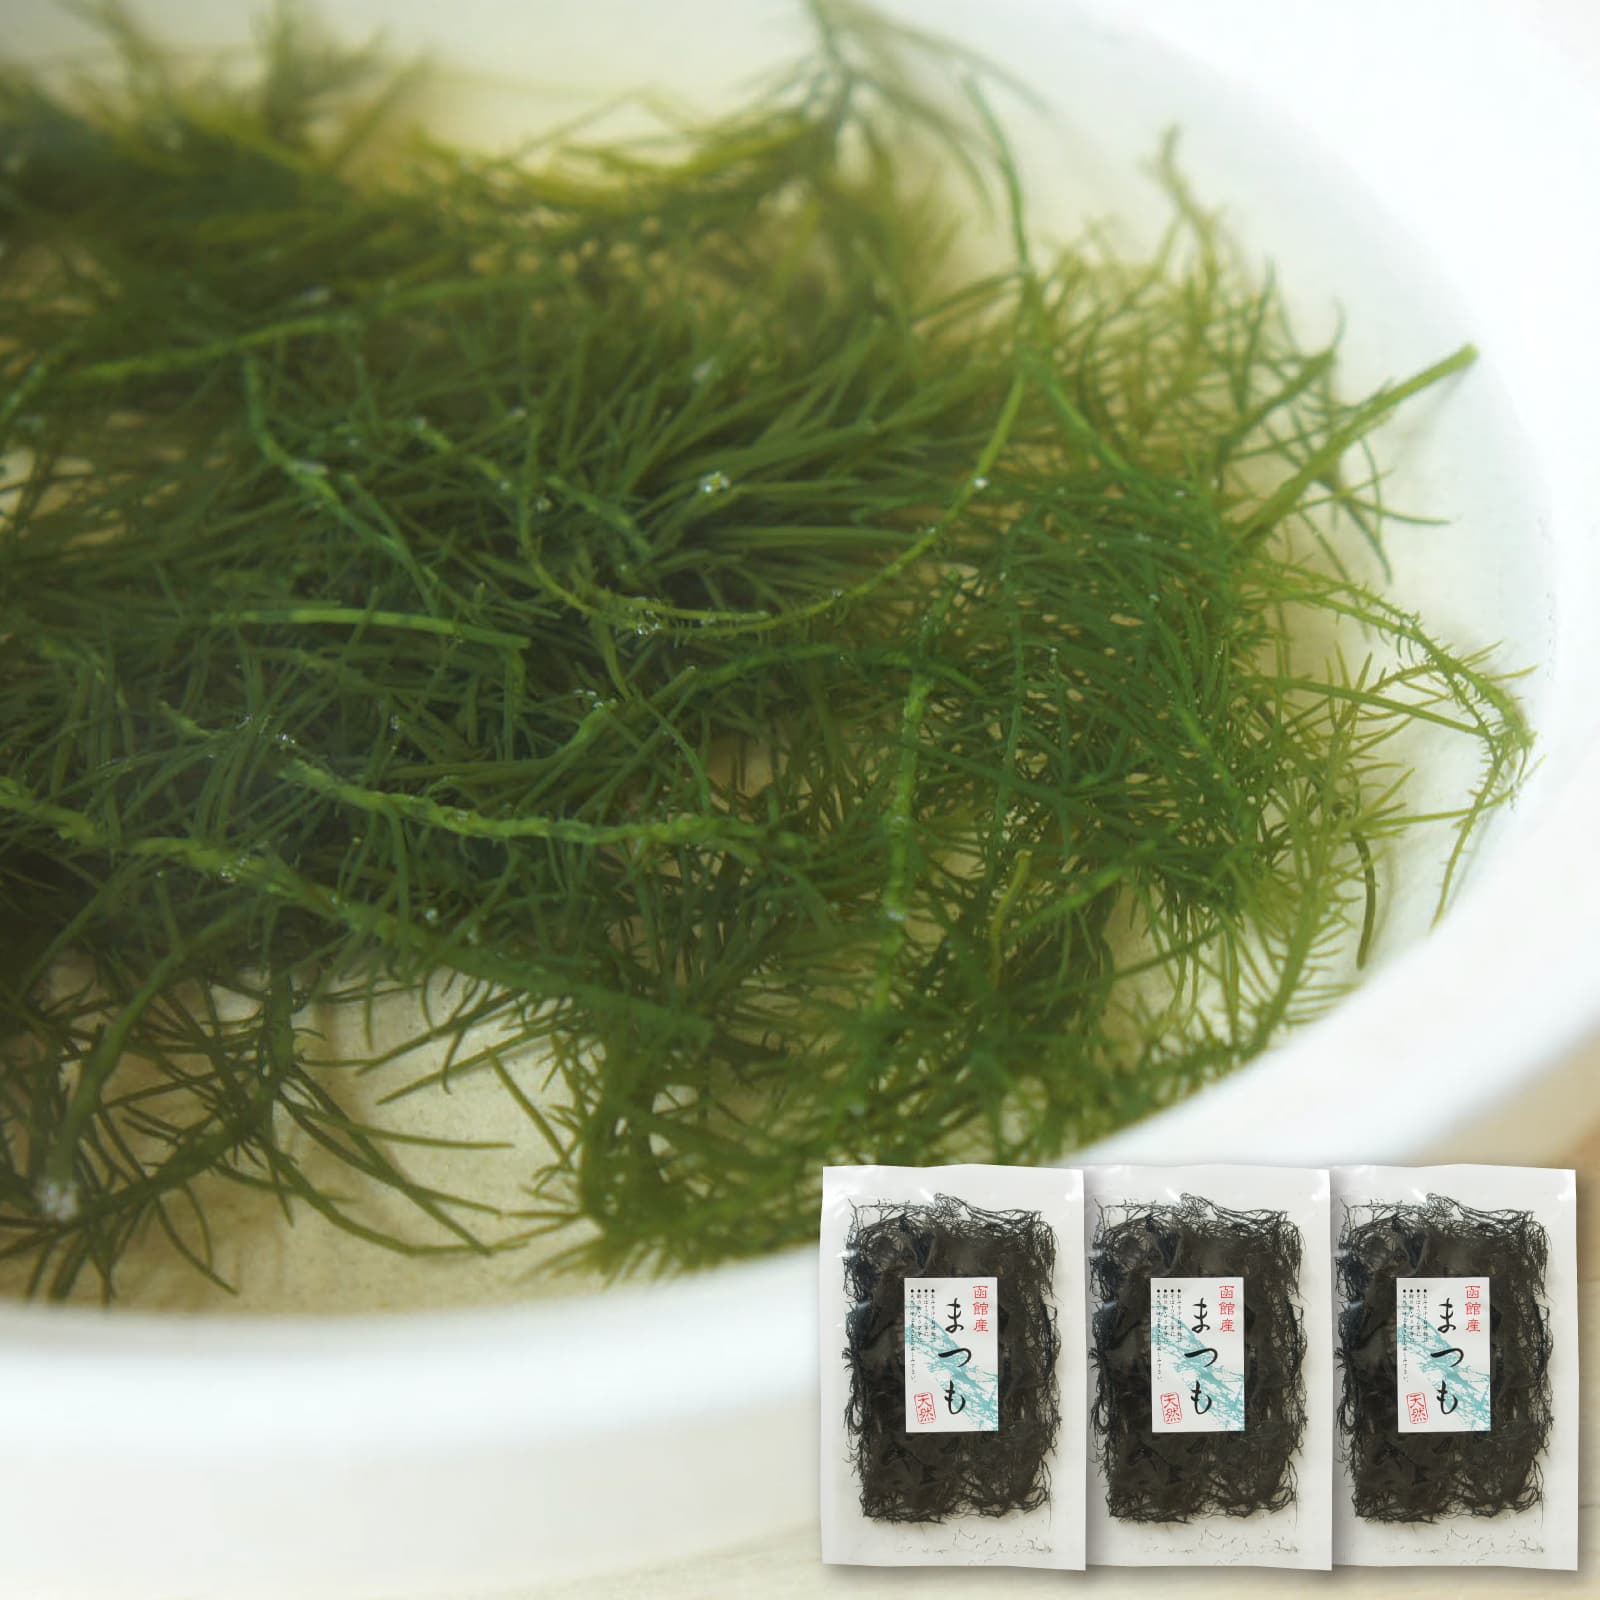 海藻 まつも 10g×3袋 天然海草 函館産 松藻 シャッキッとした歯触りで美味しい 1